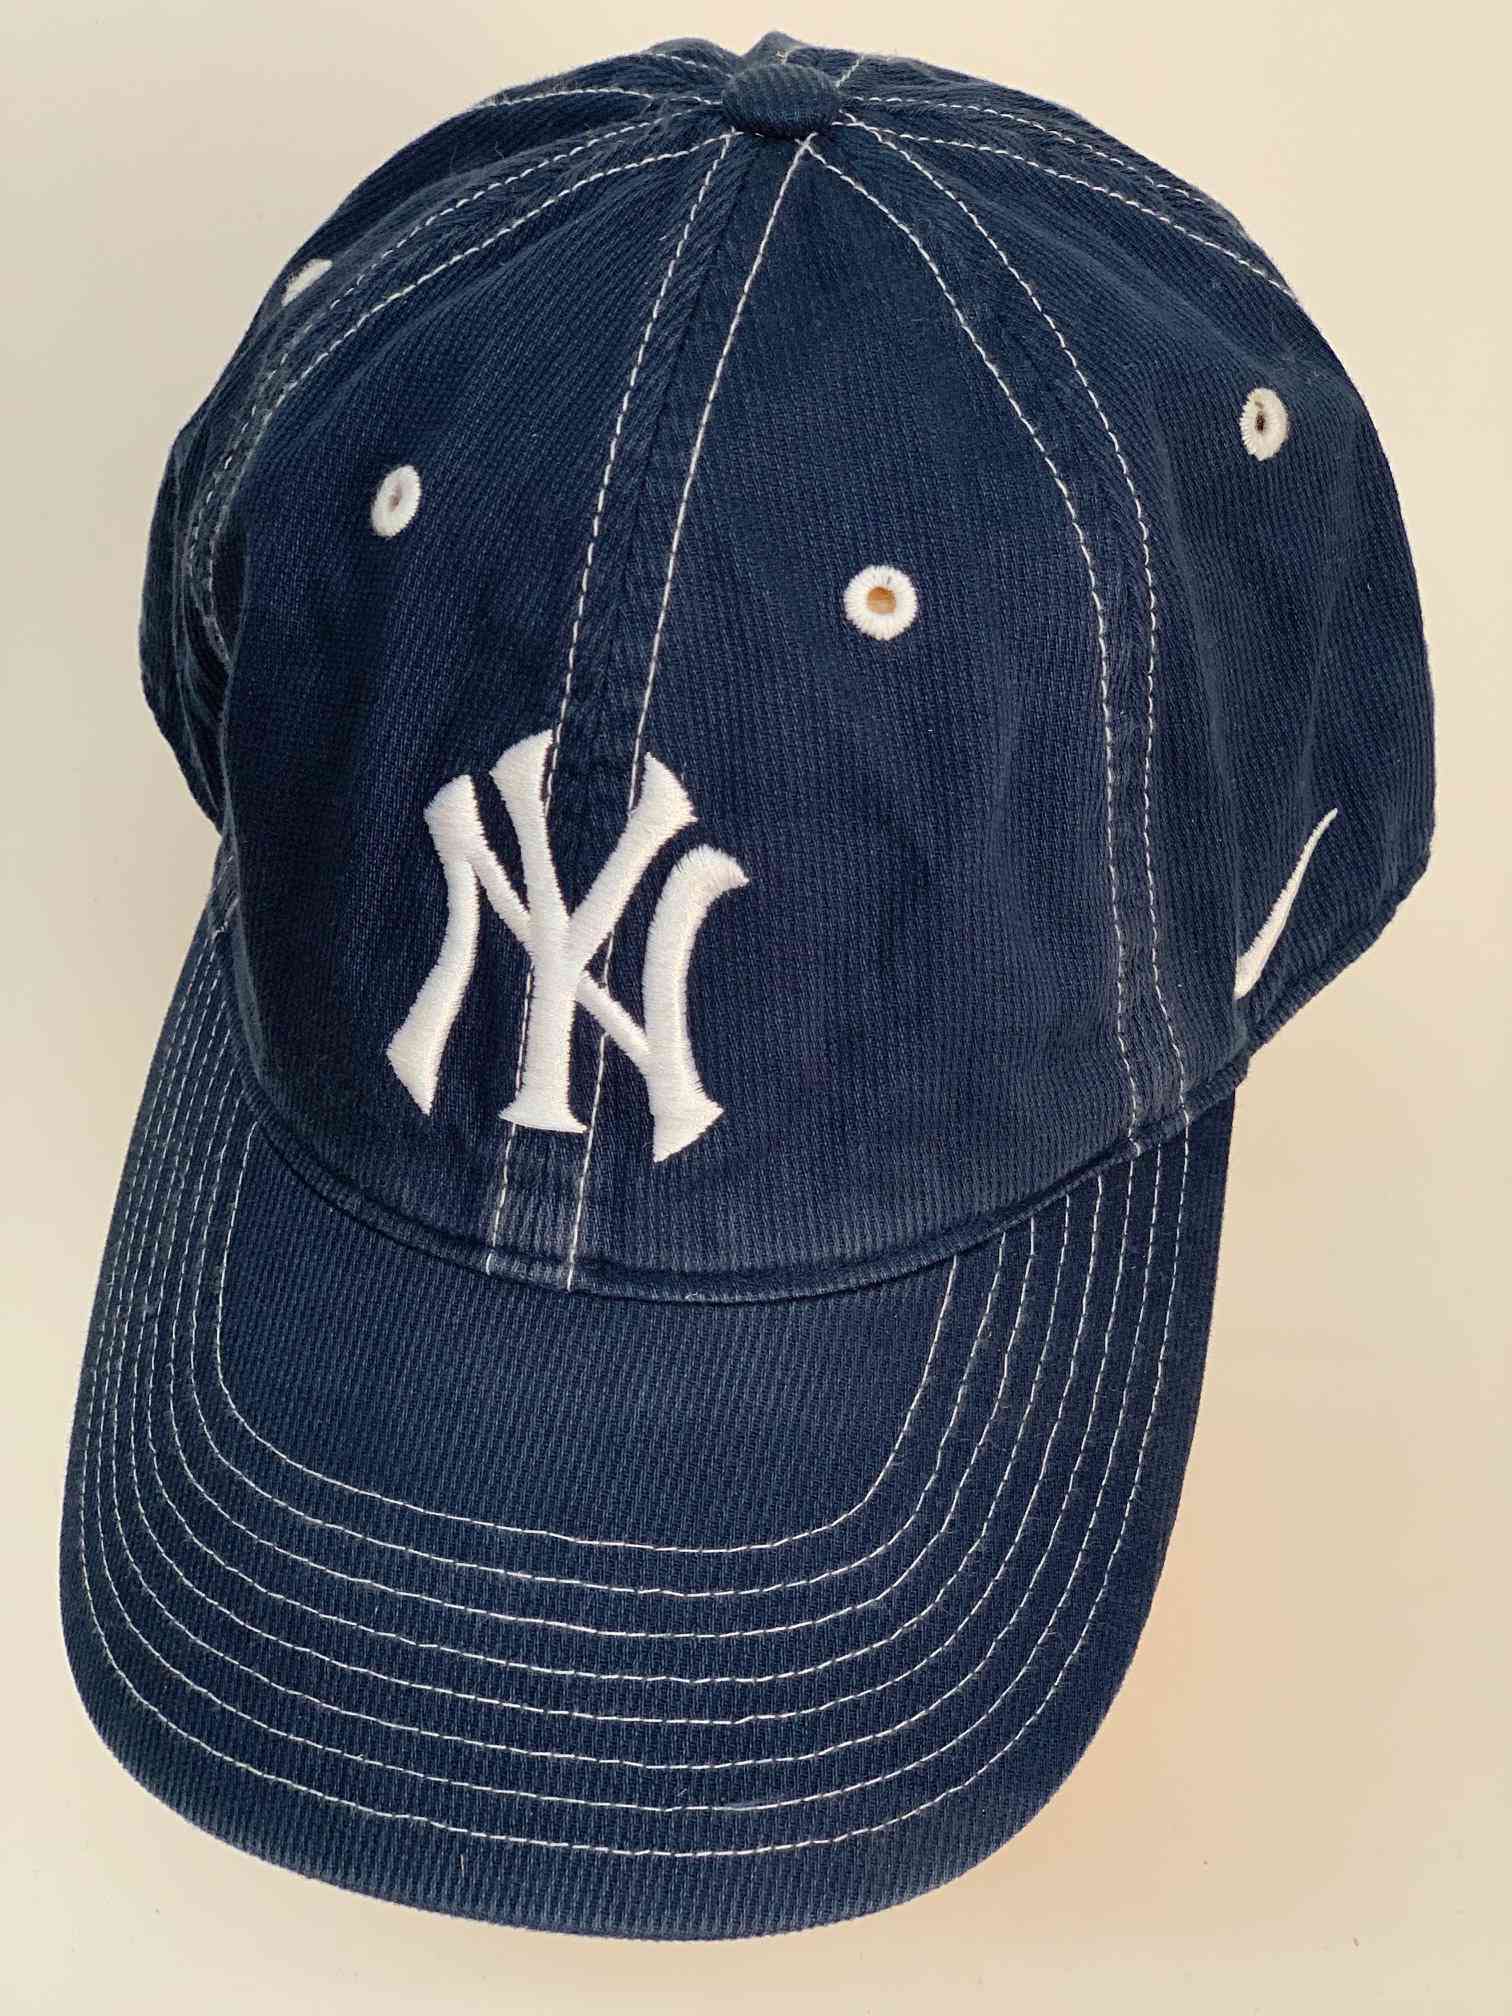 Кепка для фанатов бейсбольной команды Нью-Йорк Янкиз